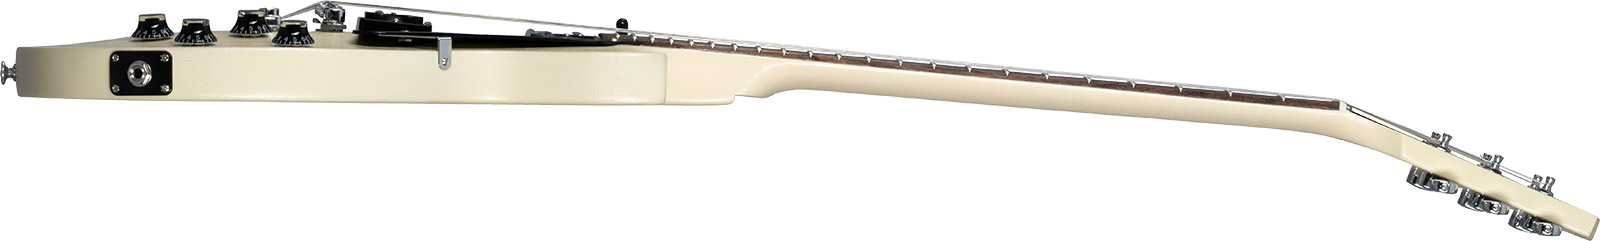 Gibson Les Paul Modern Lite 2h Ht Rw - Tv Wheat - Single-Cut-E-Gitarre - Variation 2